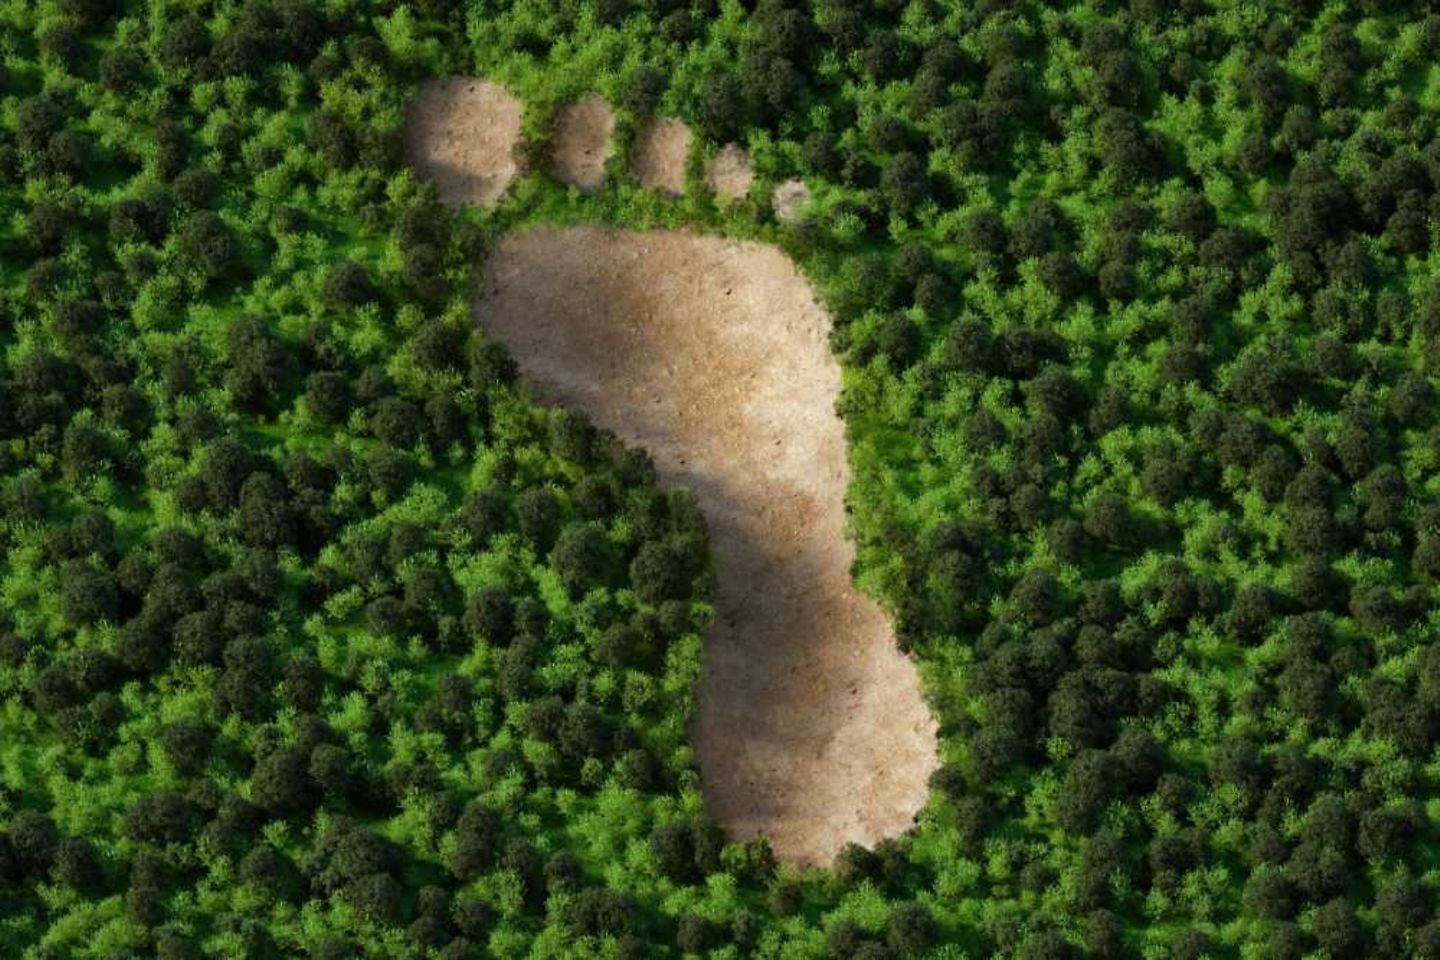 Une forêt avec une zone dénudée en forme d’empreinte de pas